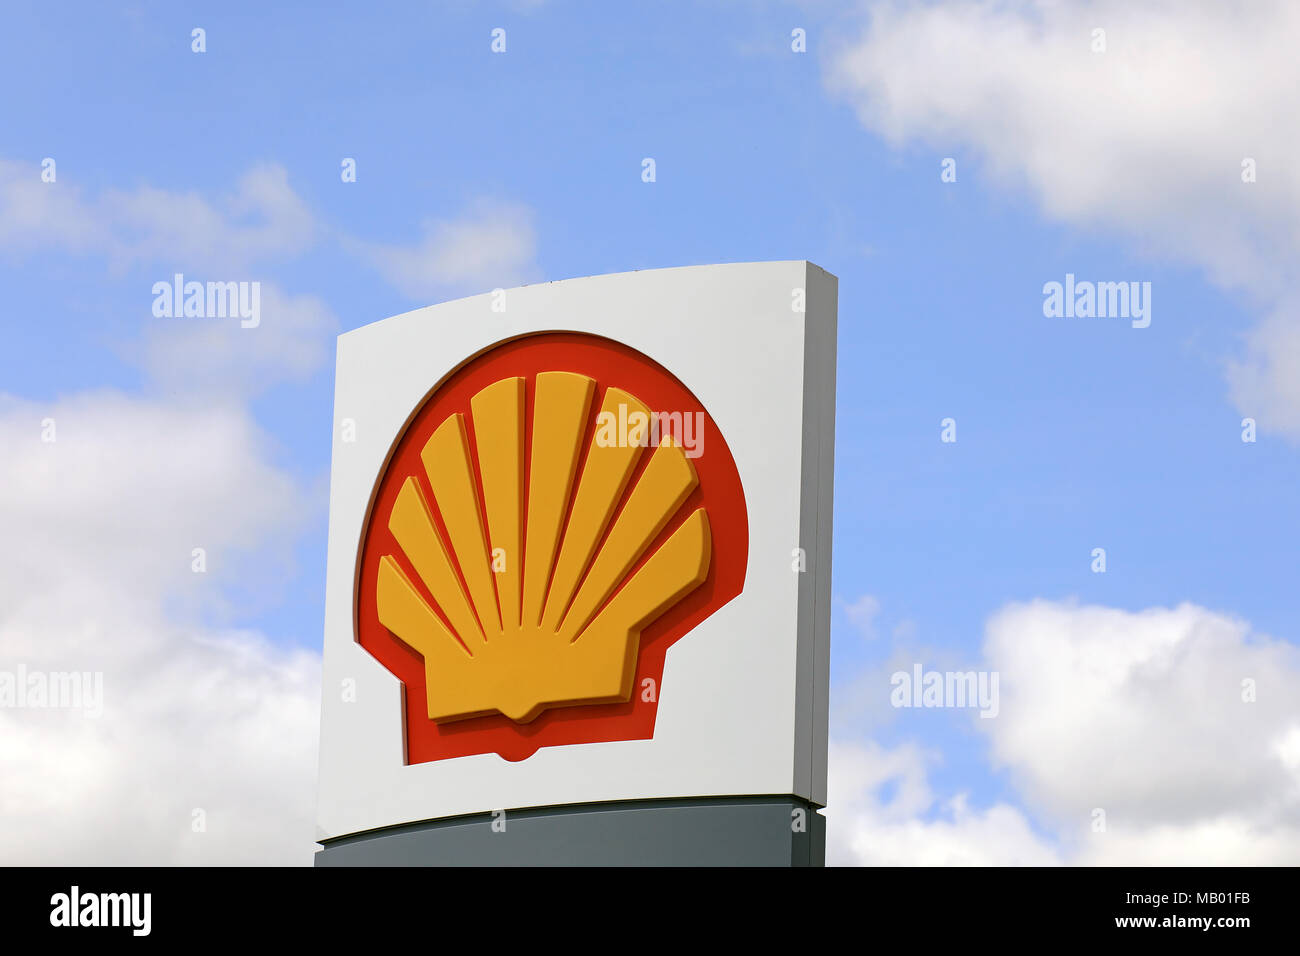 AURA, Finnland - 10. Juni 2017: Die Royal Dutch Shell logo gegen den blauen Himmel und weißen Wolken außerhalb einer Tankstelle im Süden Finnlands. Stockfoto